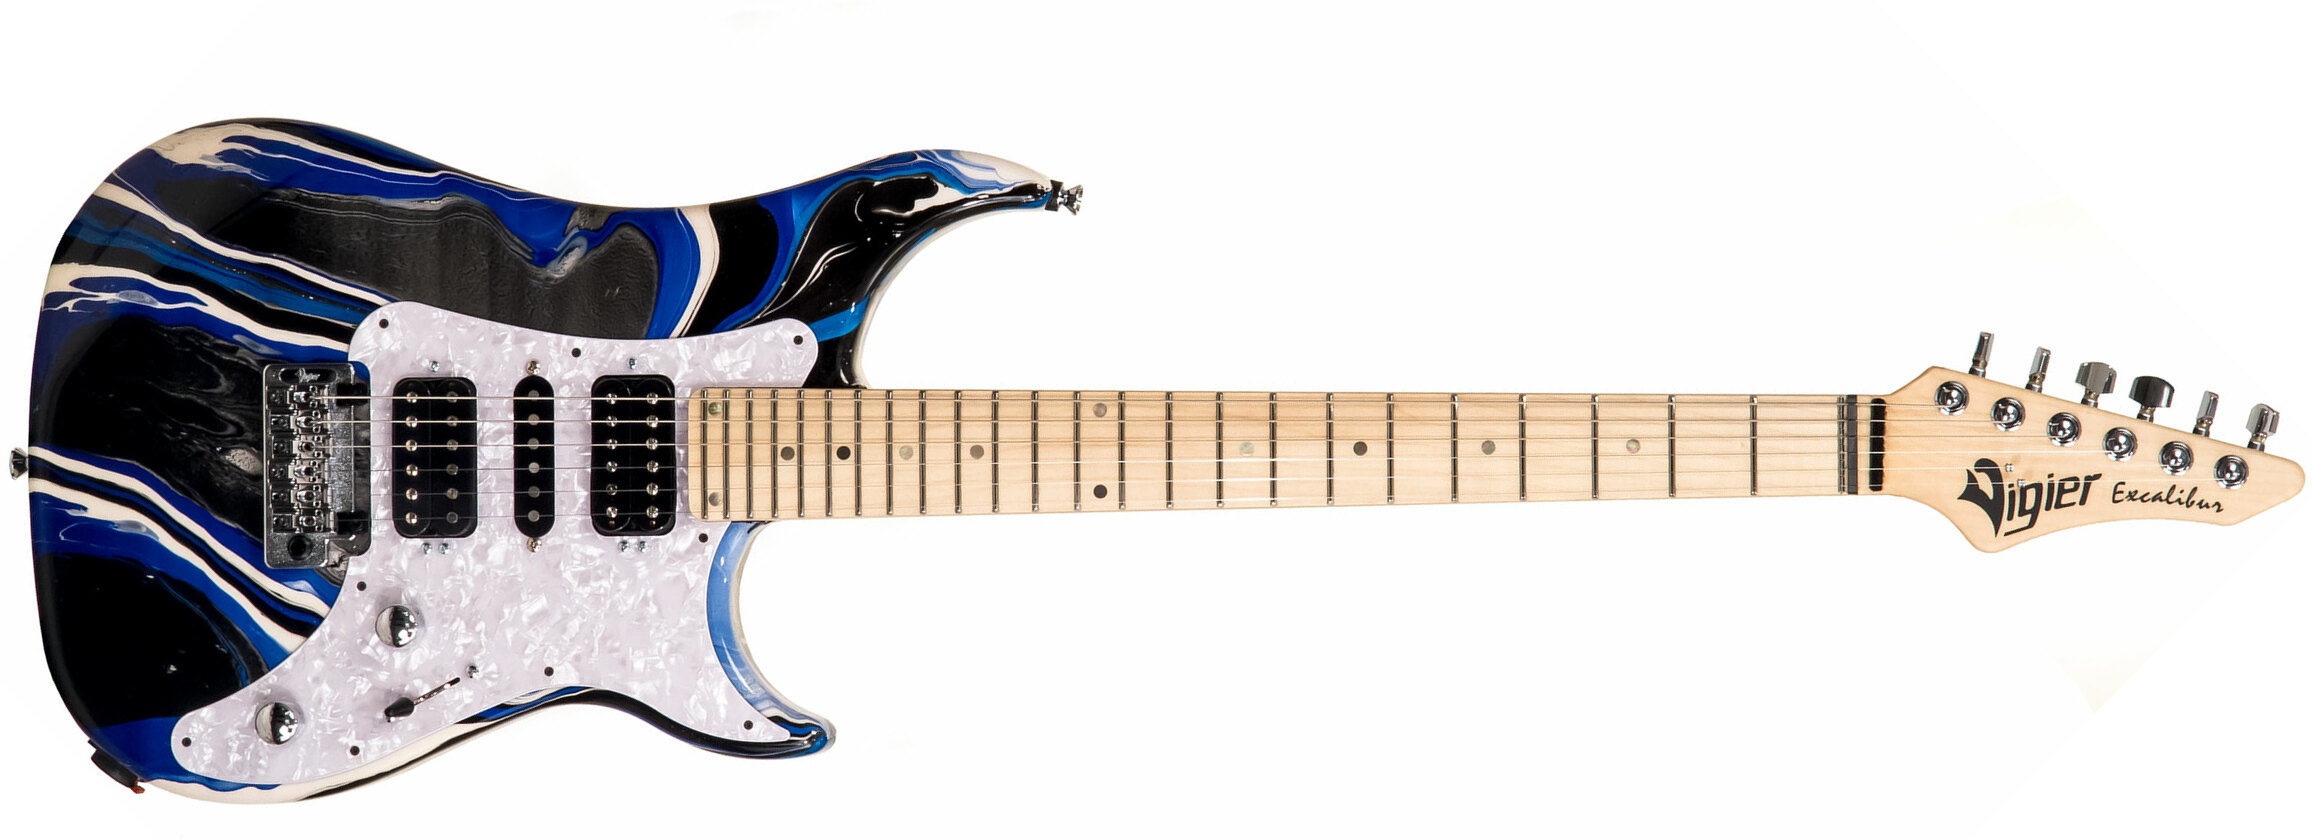 Vigier Excalibur Supraa Hsh Trem Mn - Rock Art Blue White Black - Guitarra eléctrica de doble corte. - Main picture